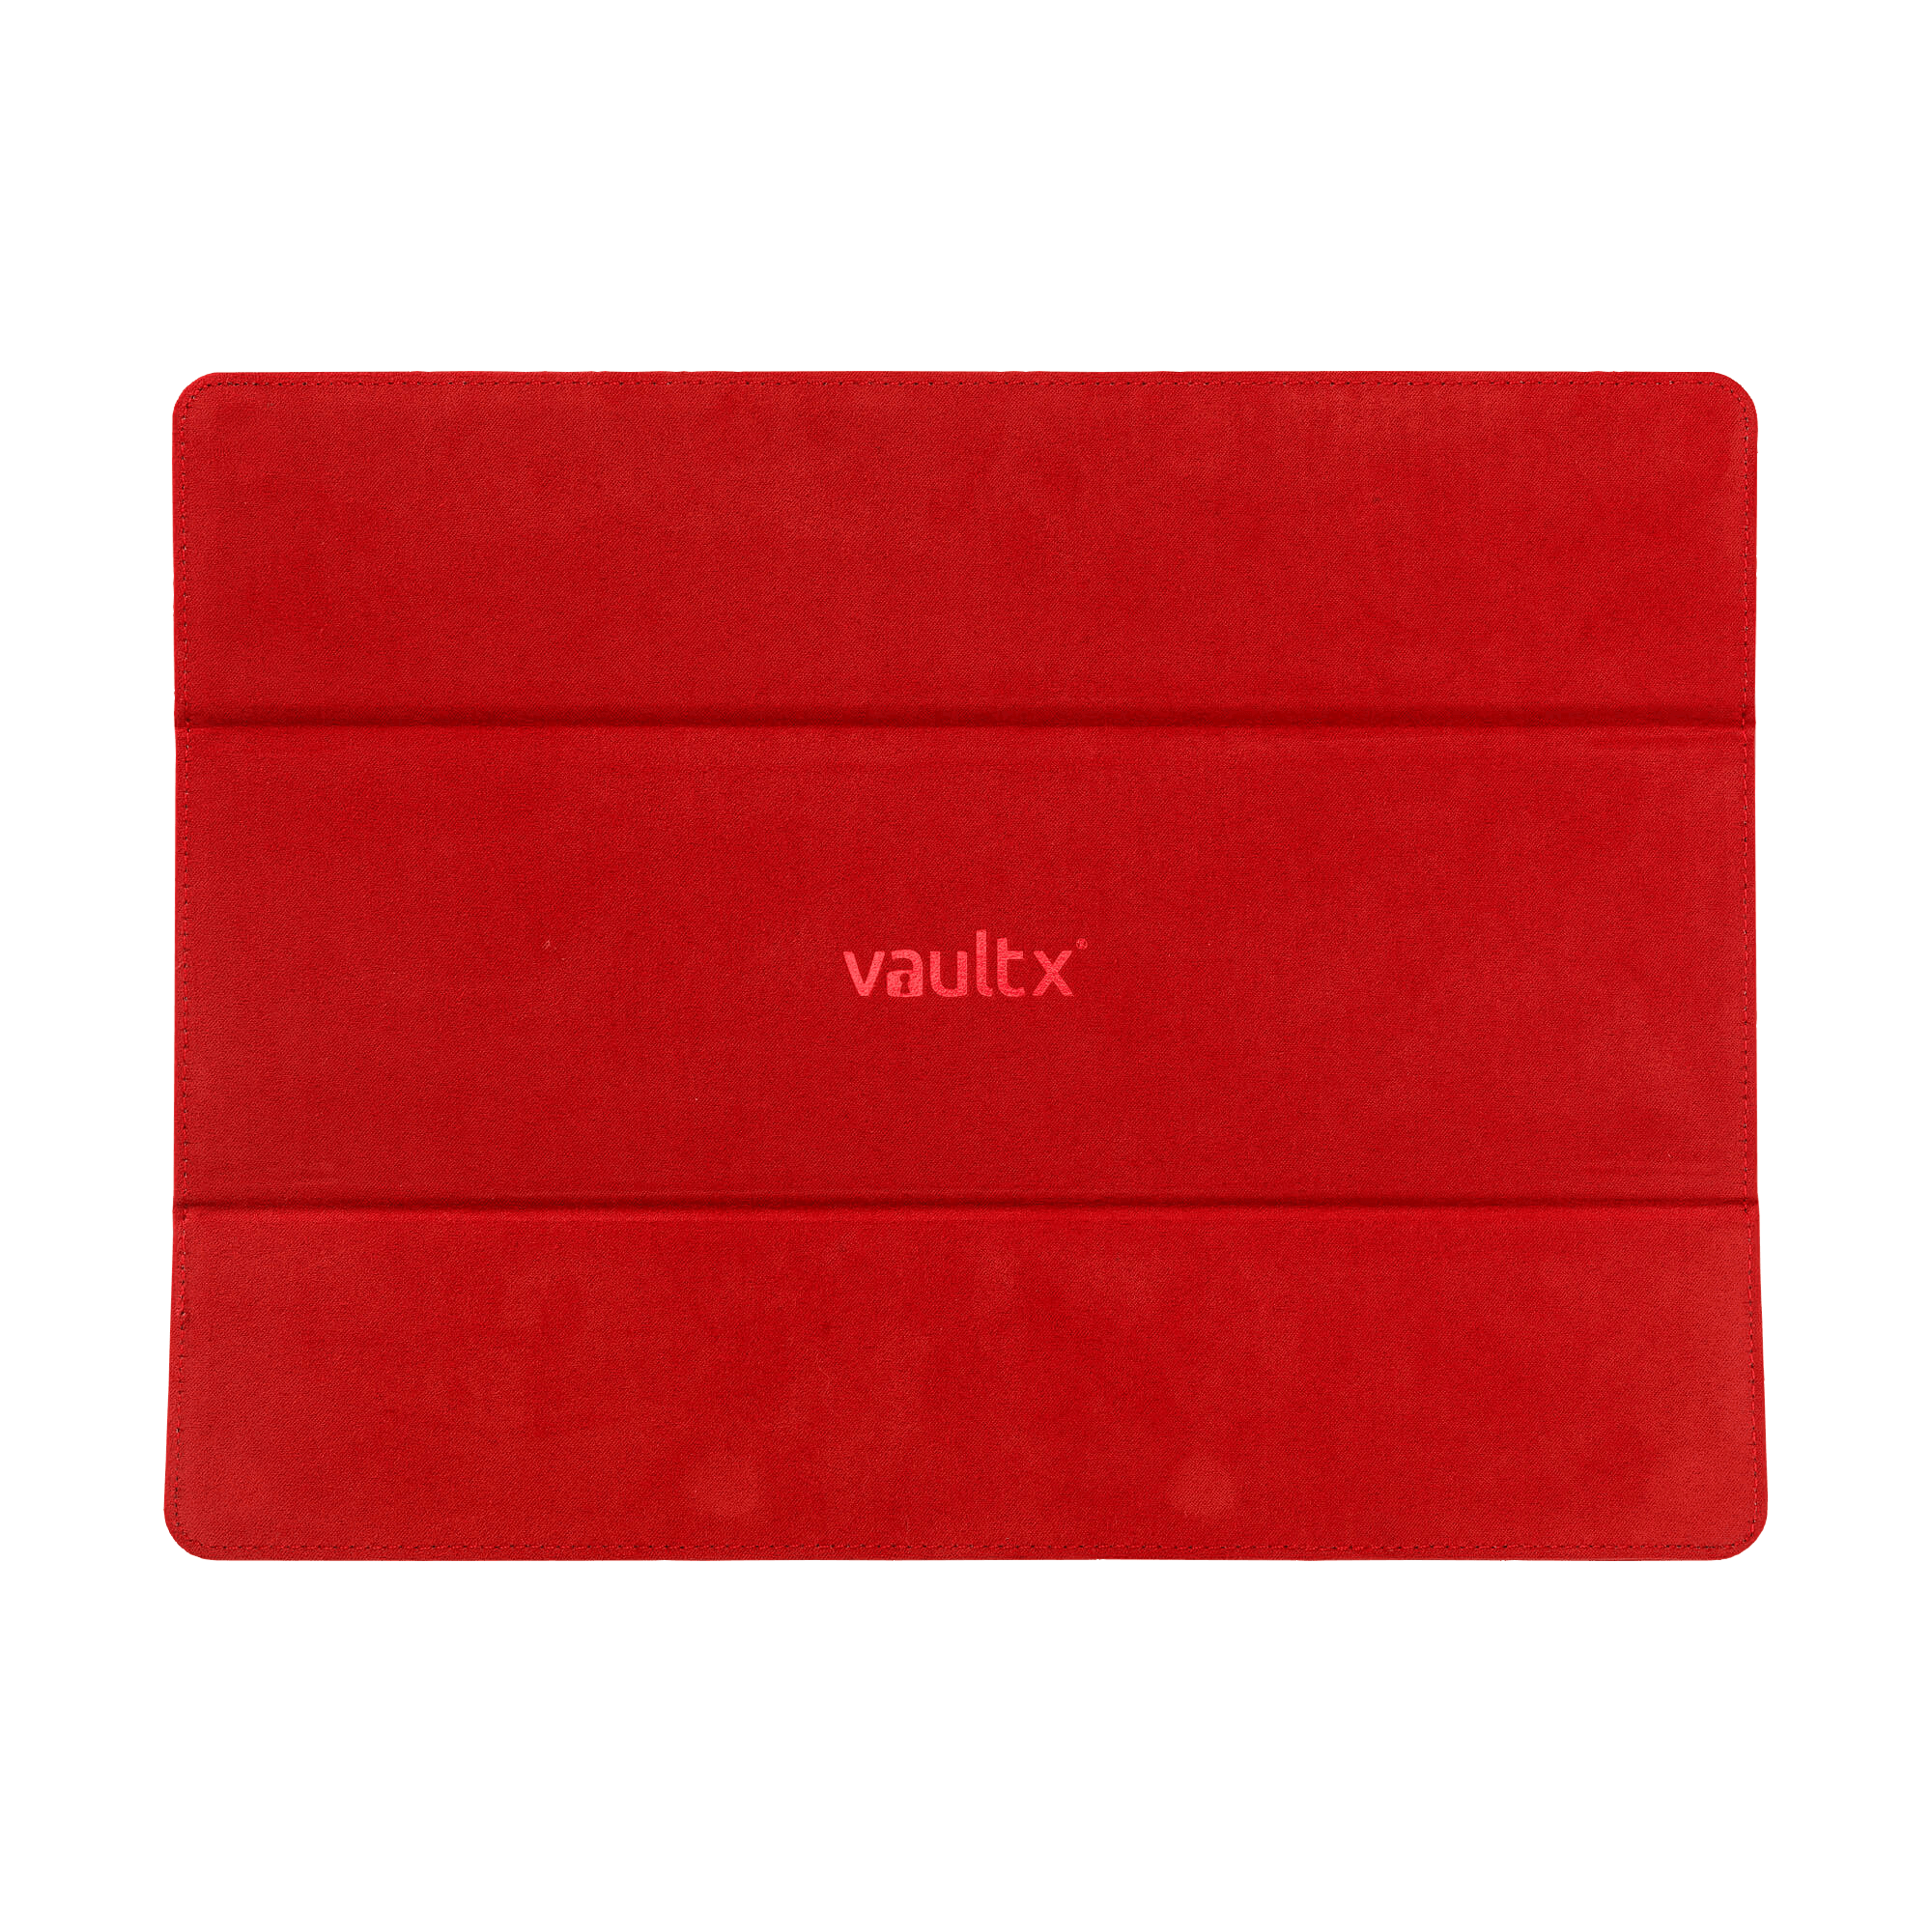 Vault X - Exo-Tec® Card Box 450+ - Red - The Card Vault